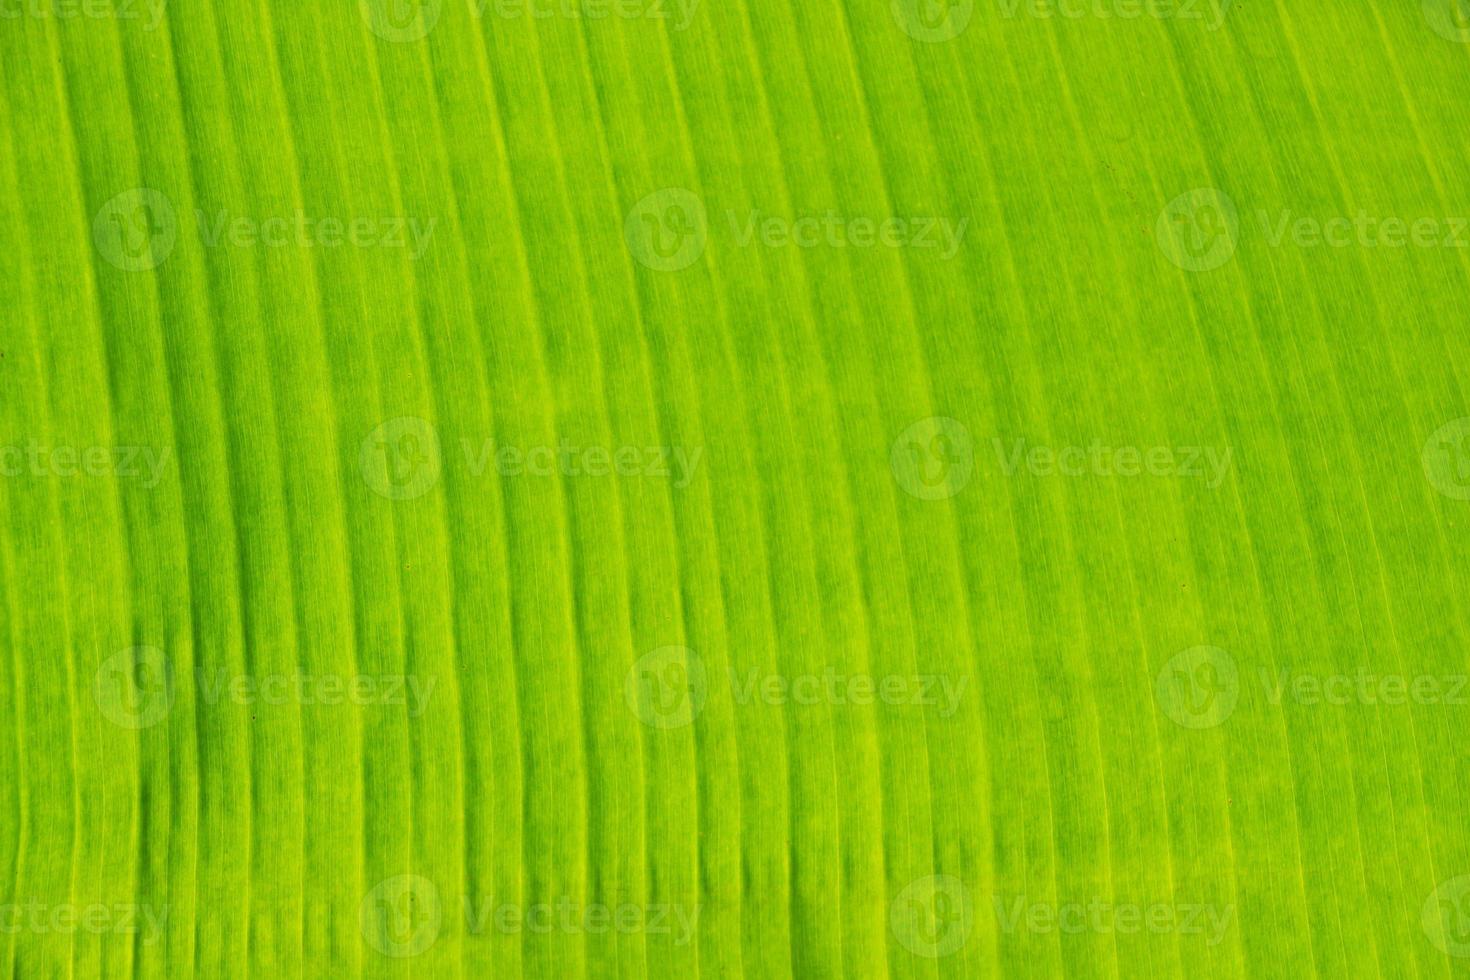 primer plano de la textura de la hoja de plátano, verde y fresco, en un parque foto